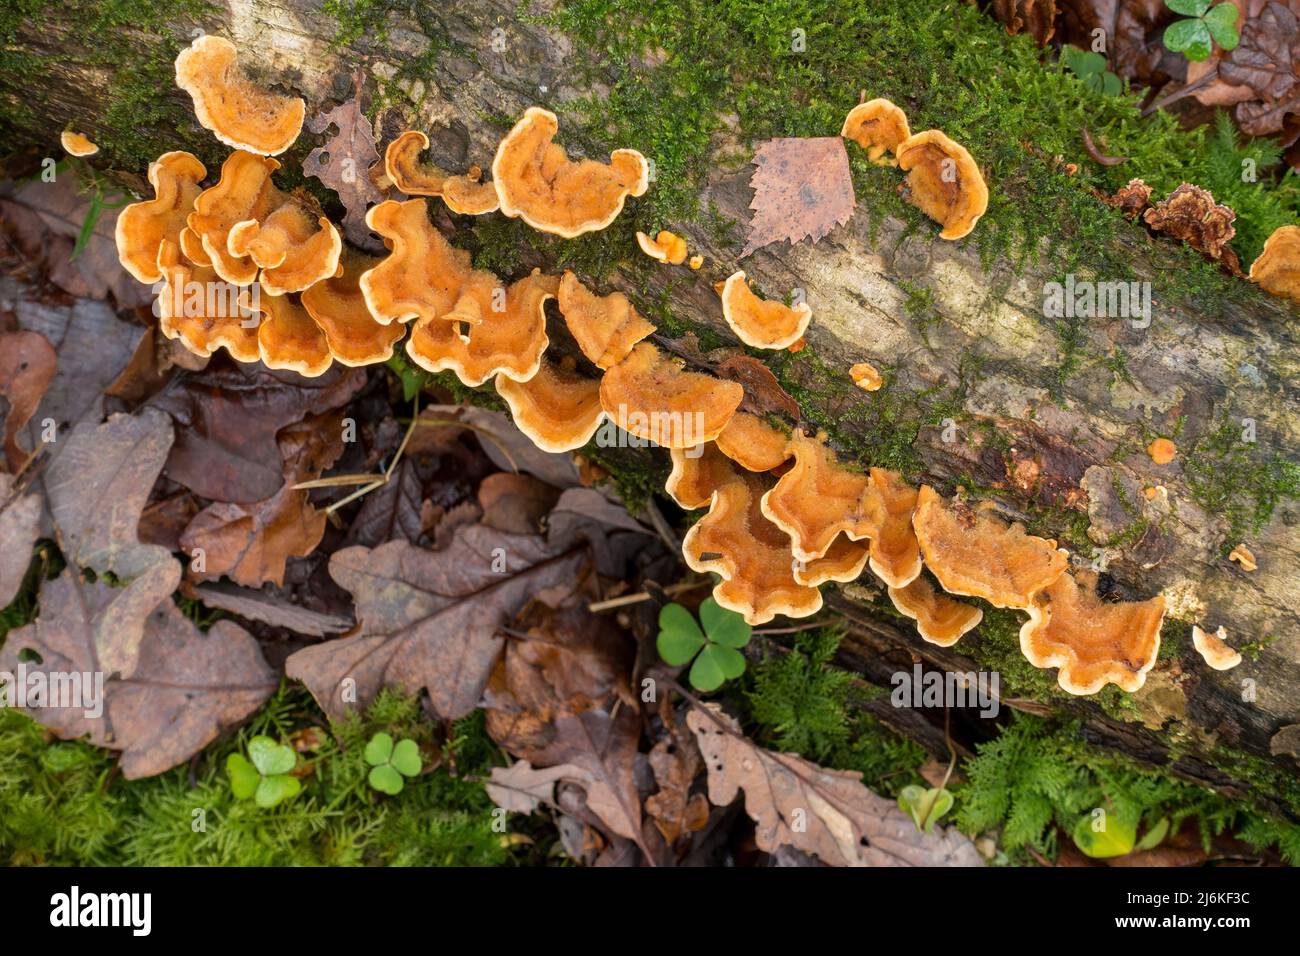 Hairy Curtain Crust (Stereum hirsutum) Bracket Pilz wächst auf Moos-bedecktem toten Baumstamm, Cumbria, England, Großbritannien Stockfoto